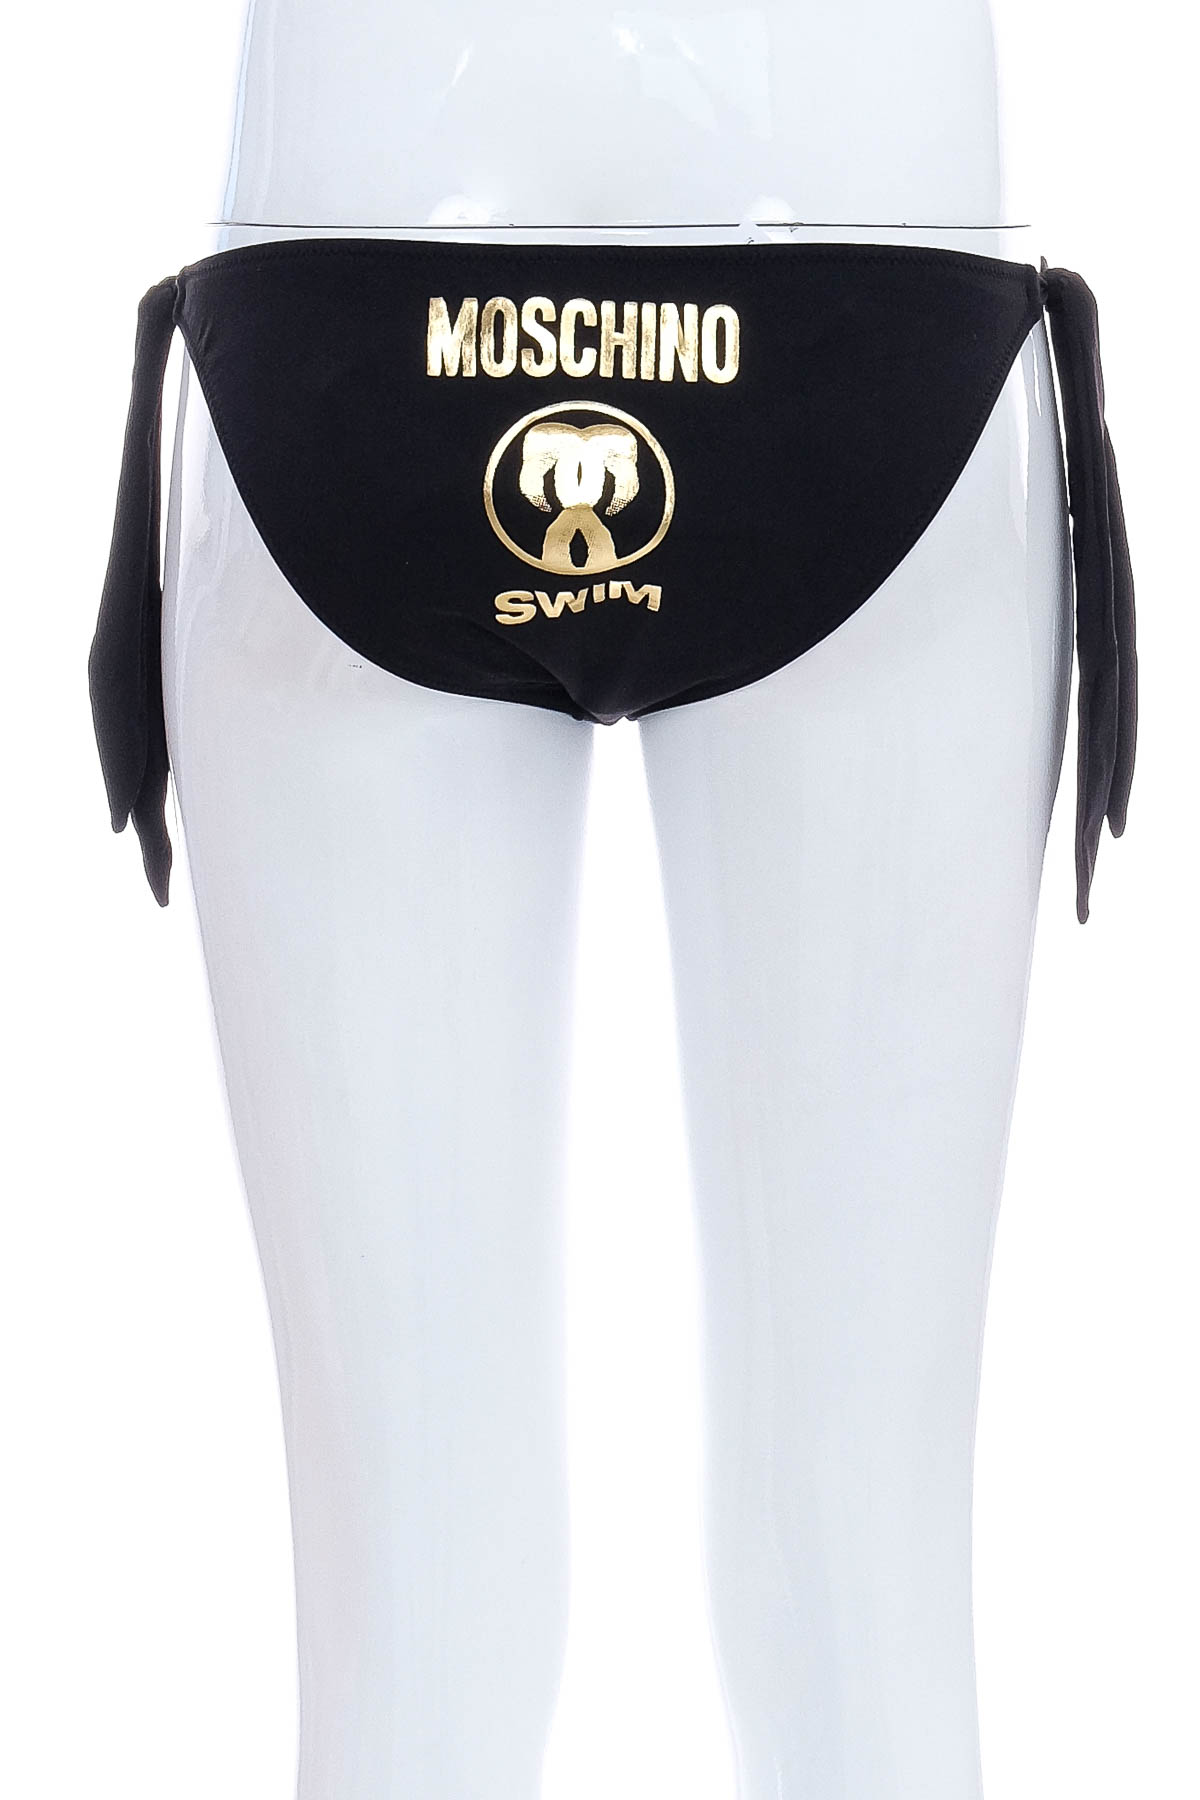 Γυναικείο παντελόνι μαγιό - MOSCHINO SWIM - 1